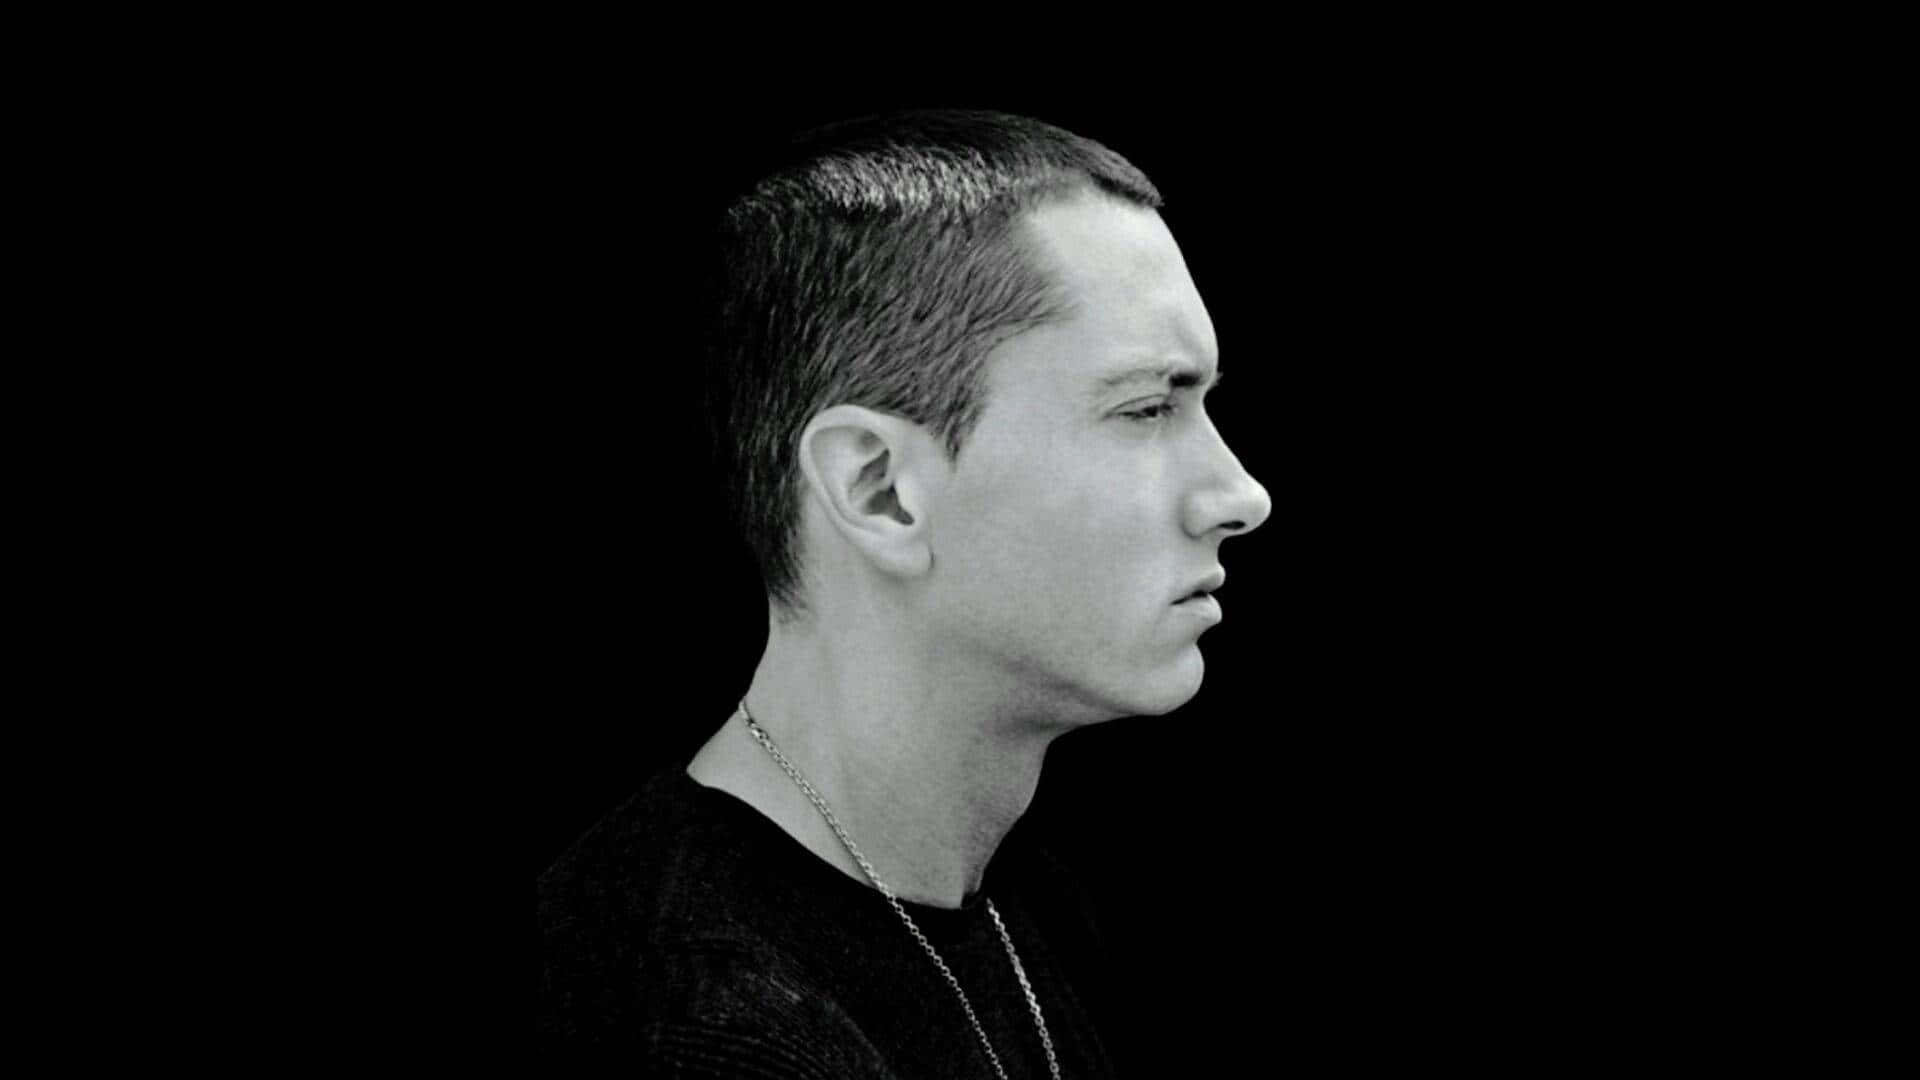 Eminemhintergrund 1920 X 1080